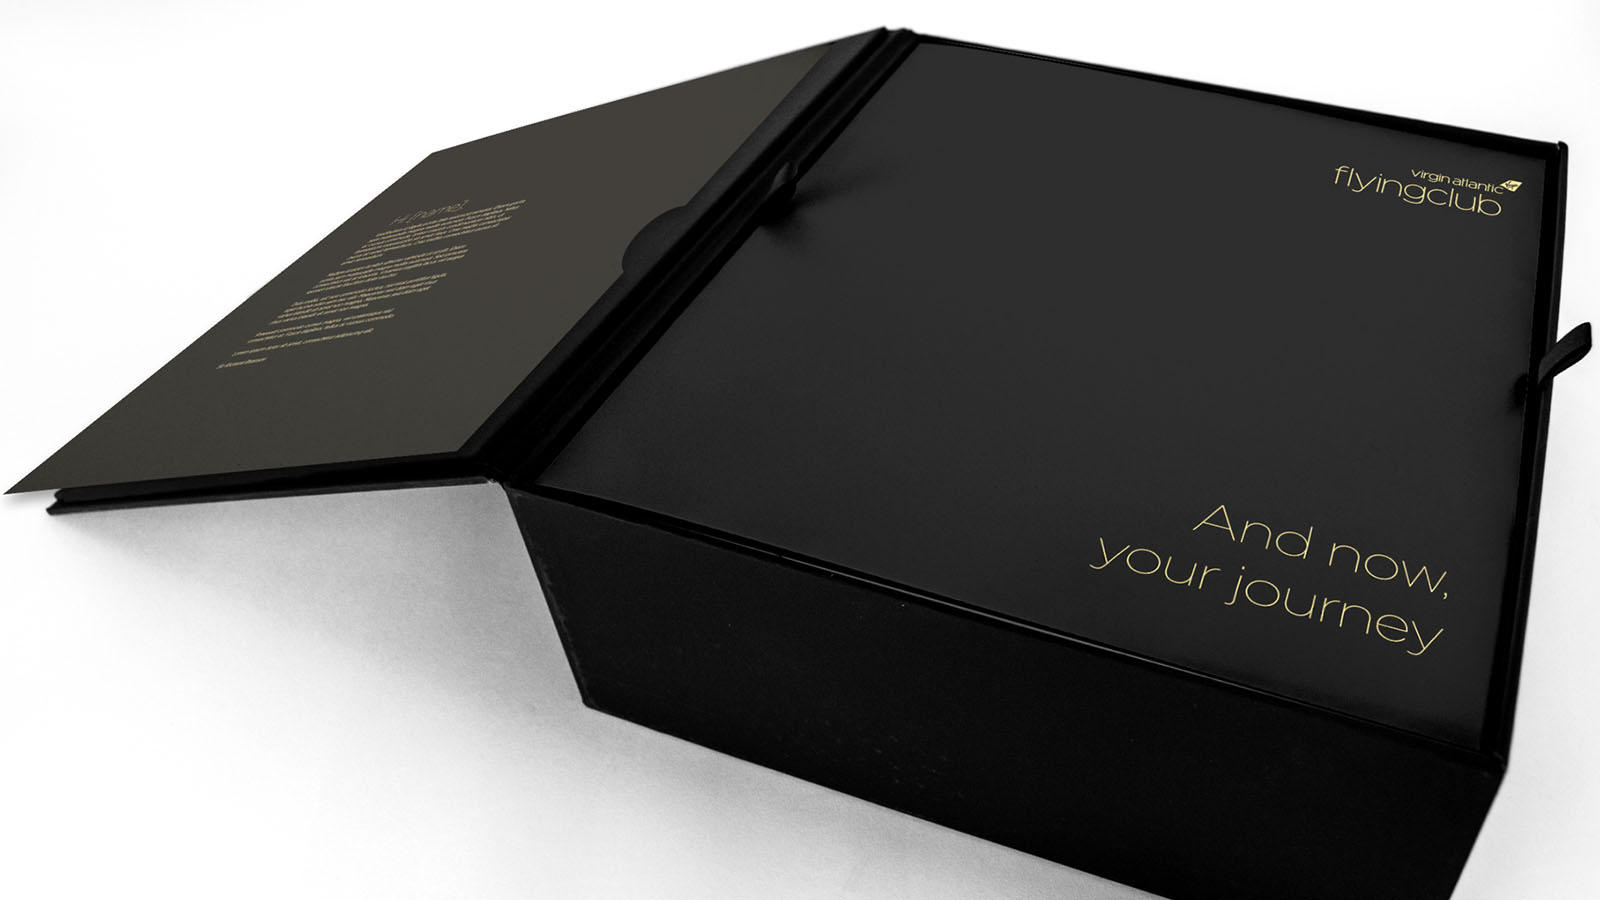 Headphone gift box for Virgin Atlantic Million Miler recognition